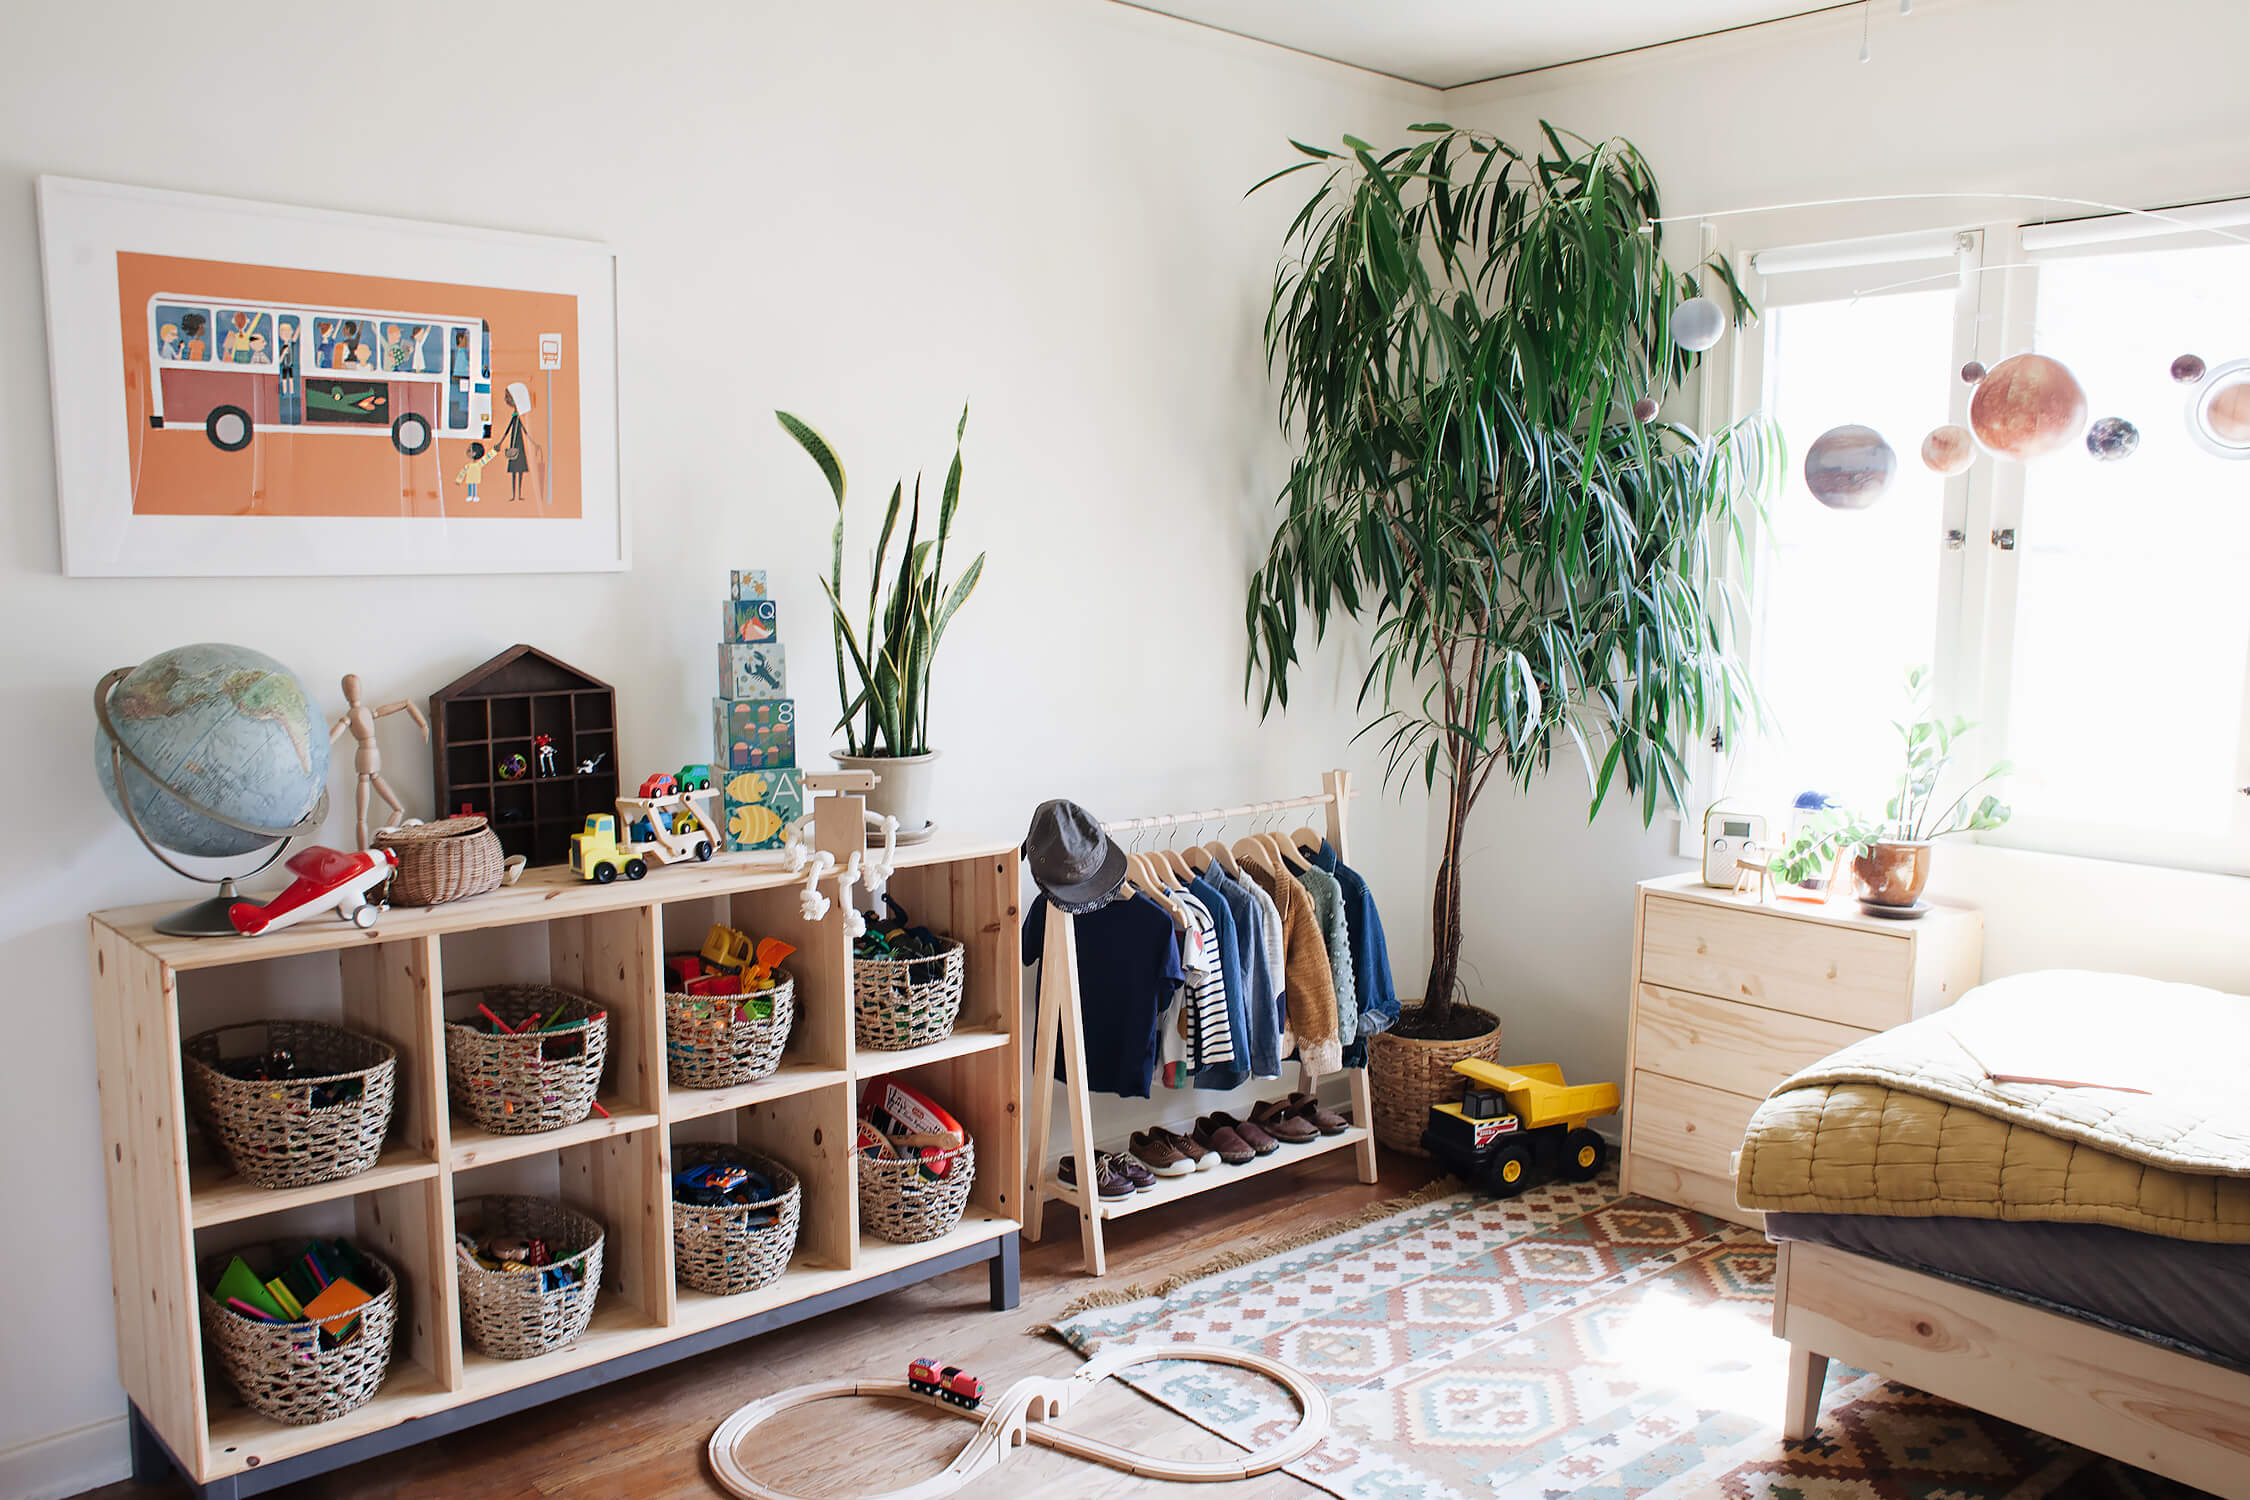 habitacion montessori 6 - 7 ideas Montessori para decorar una habitación infantil